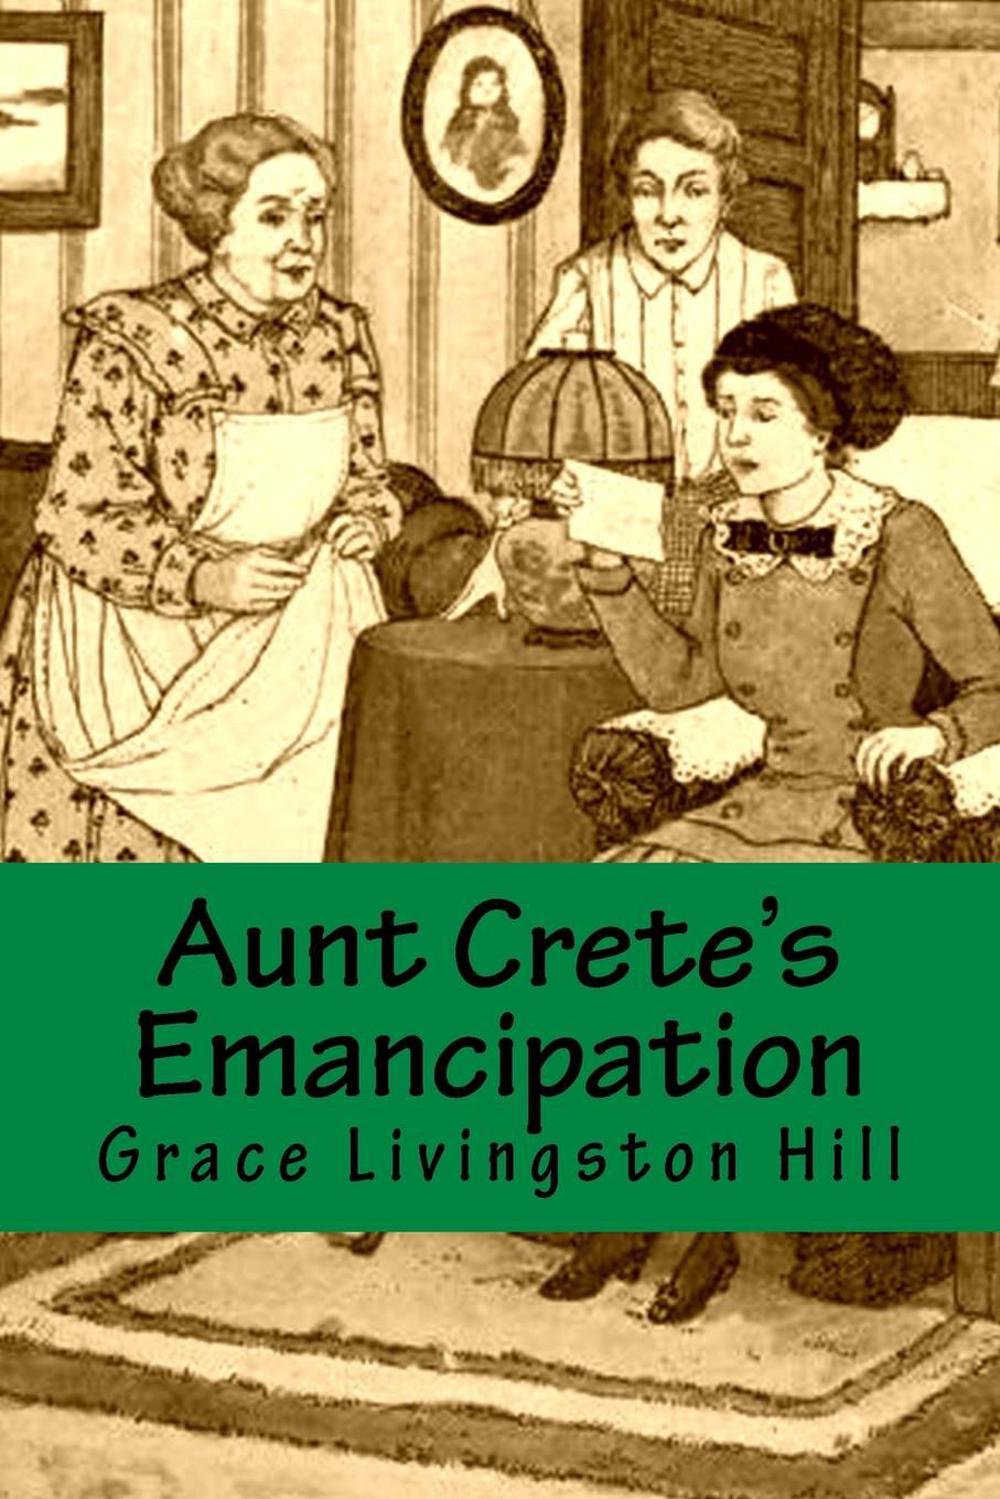 Aunt Crete